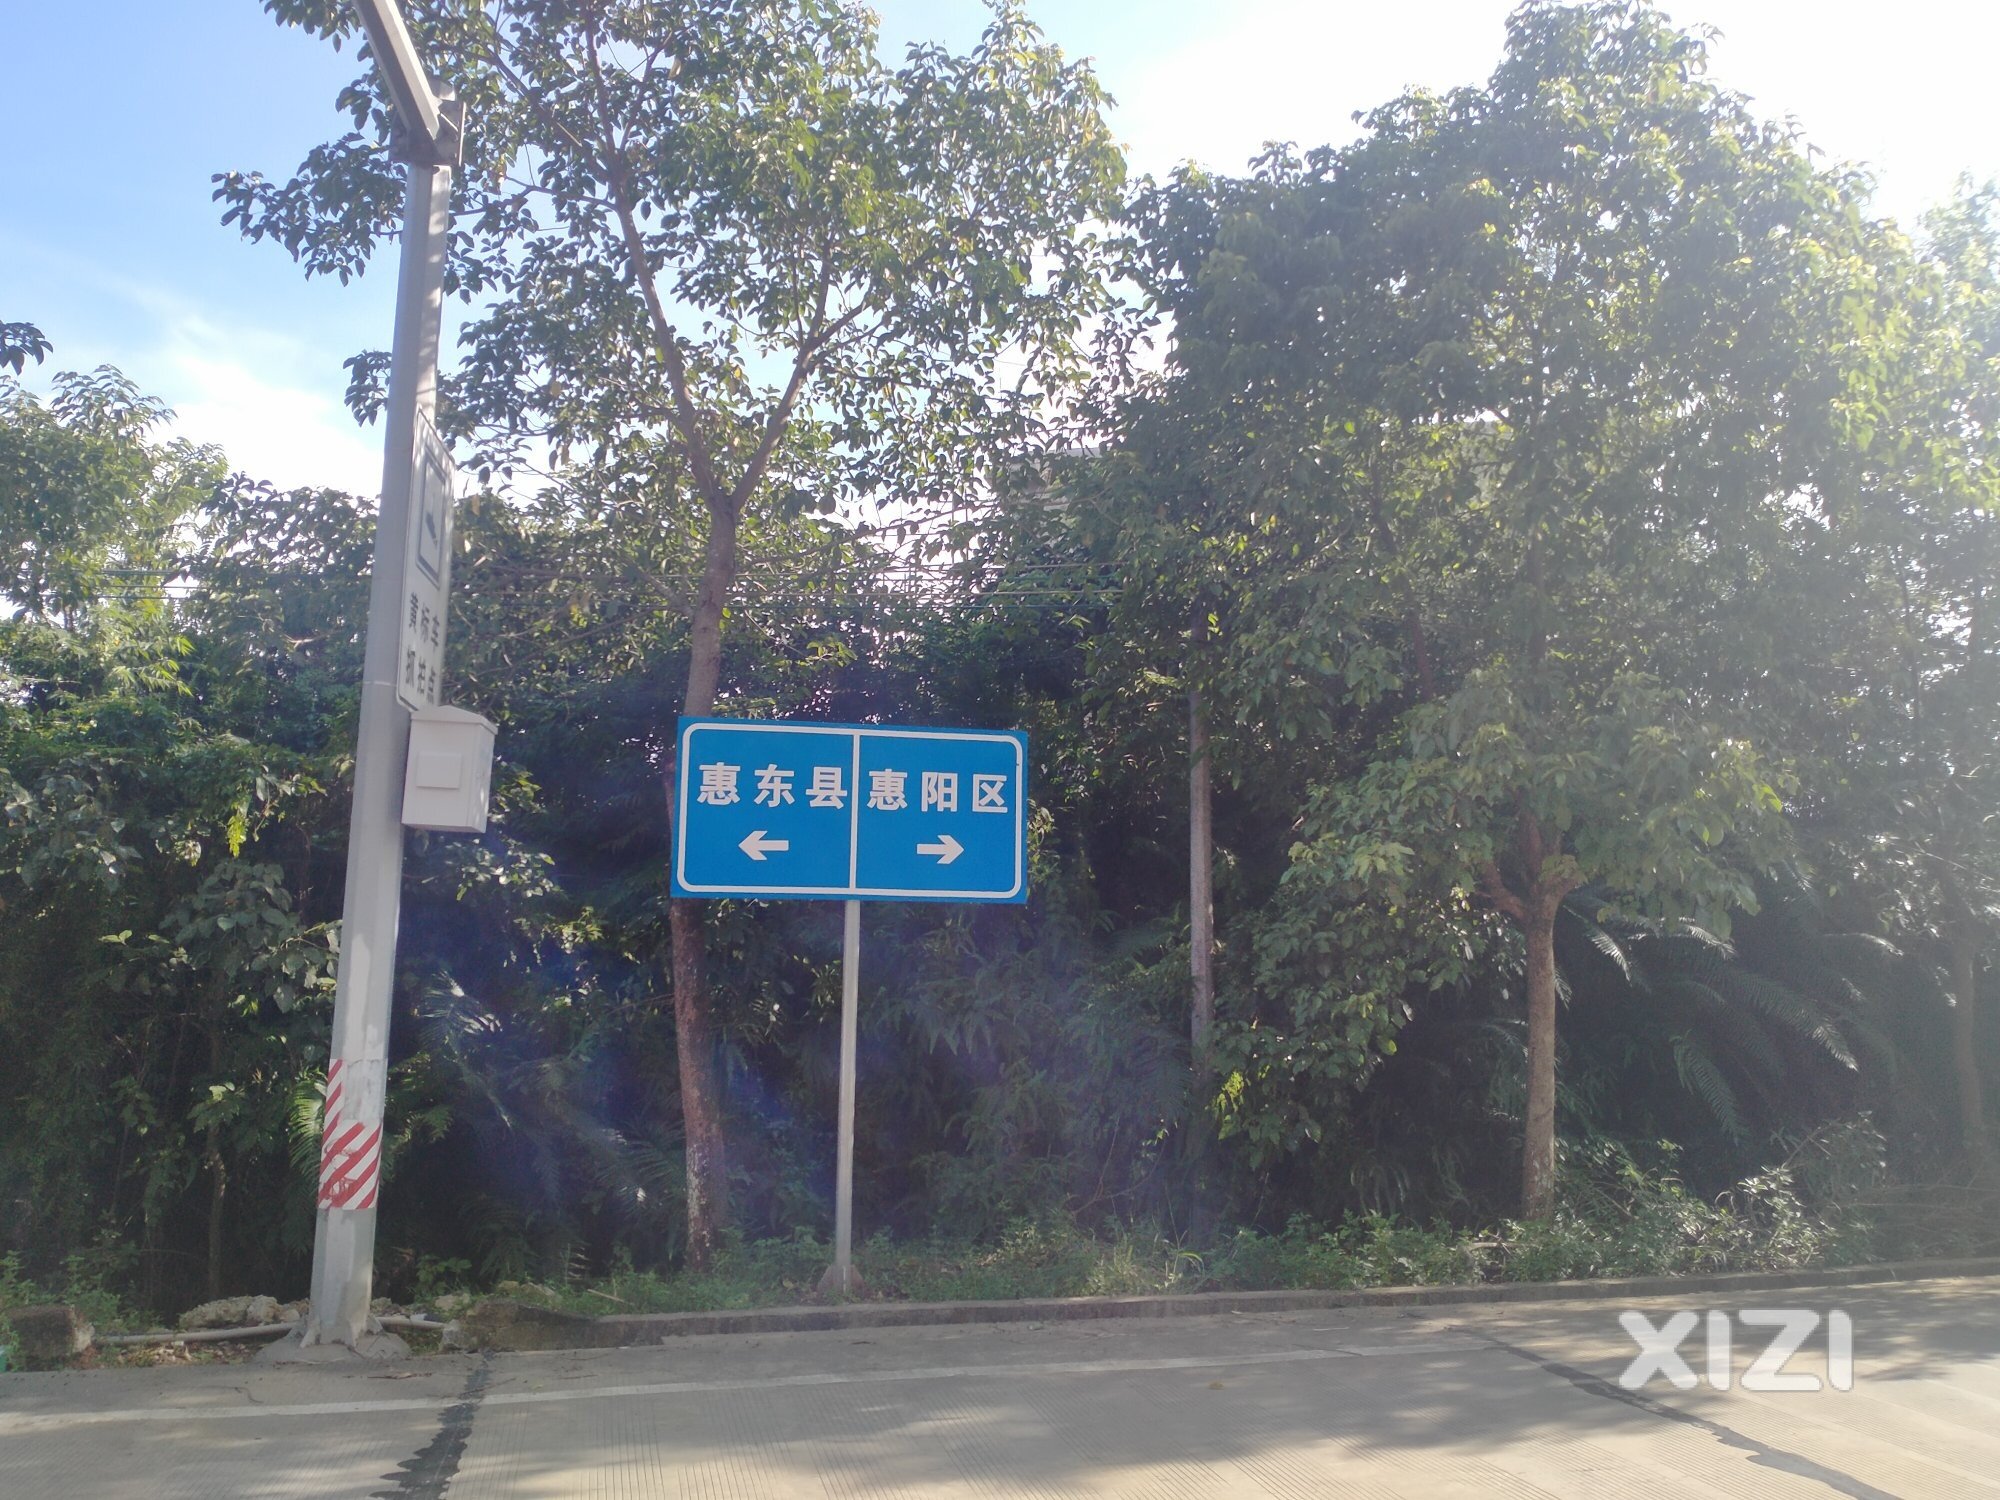 白良公路的惠阳惠东分界点。通样是2车道两边差太远了